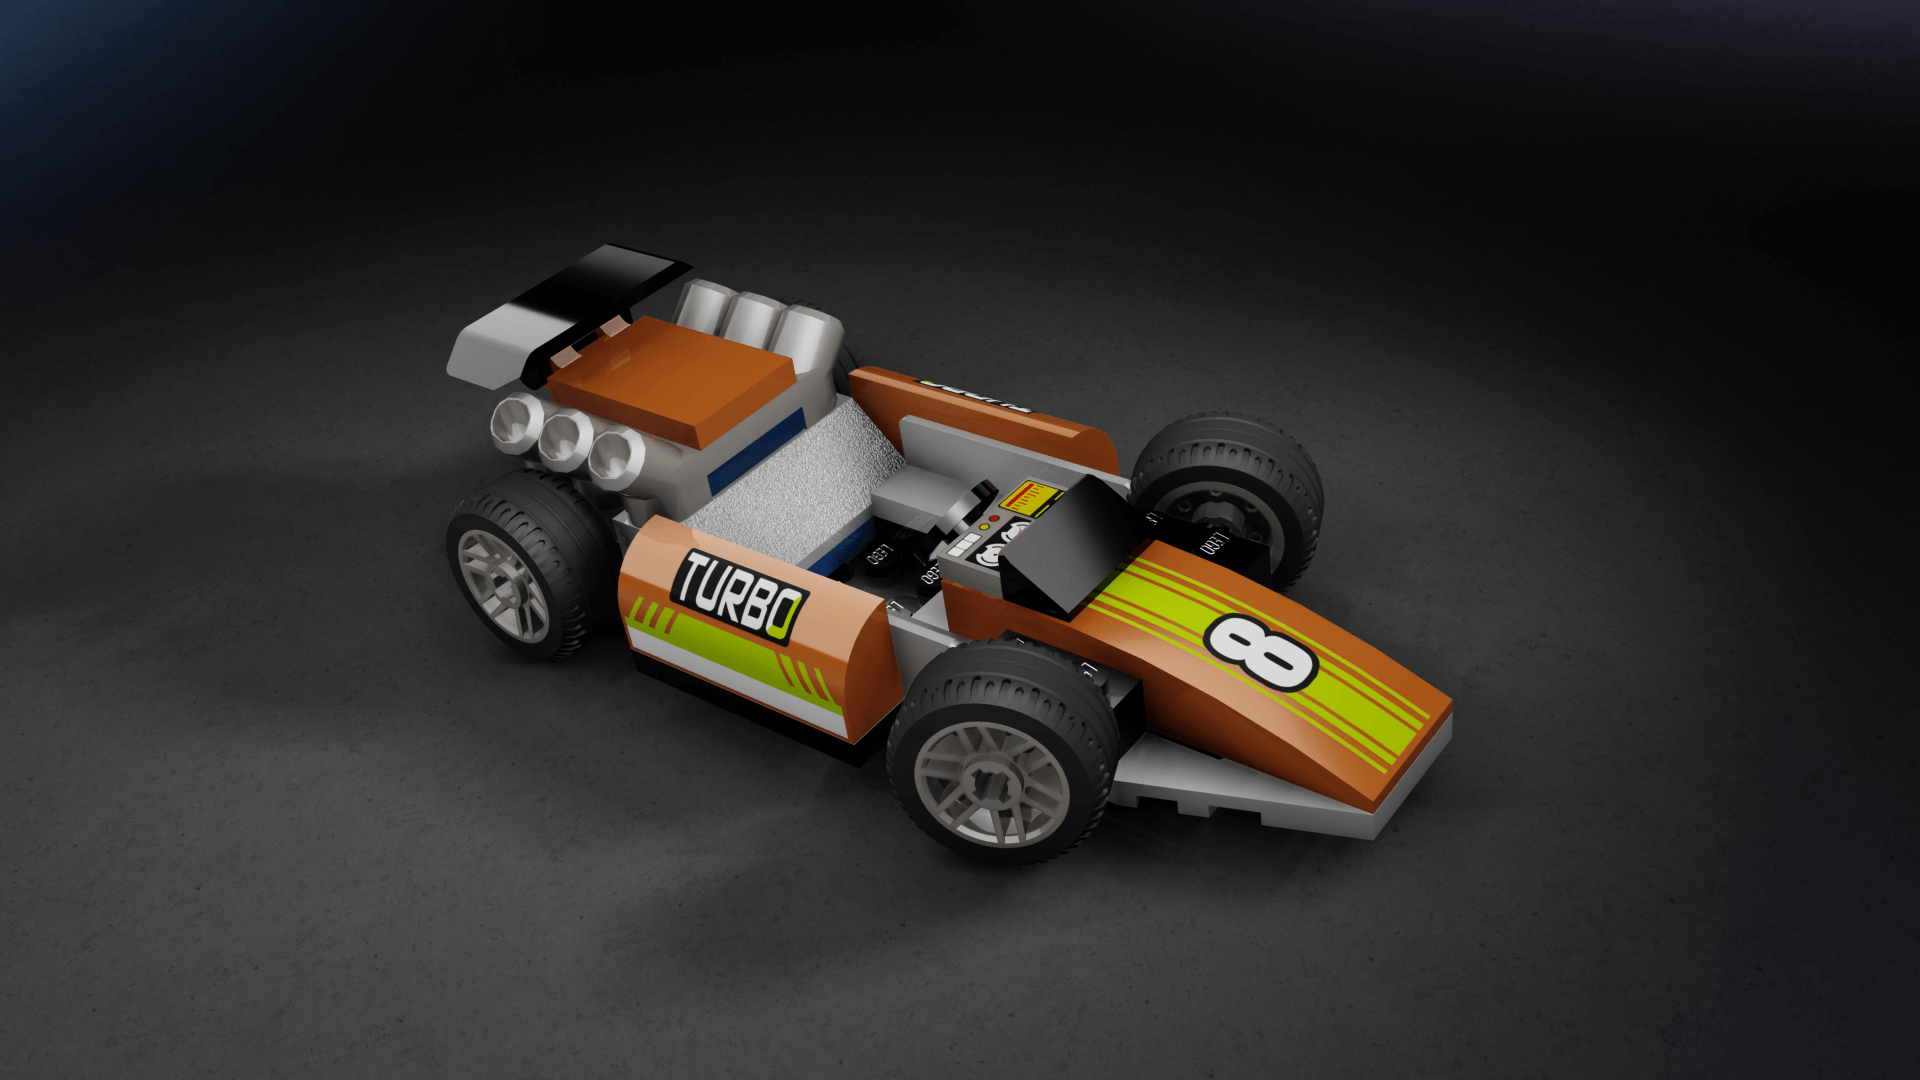 Assetto Corsa Lego City Race Car